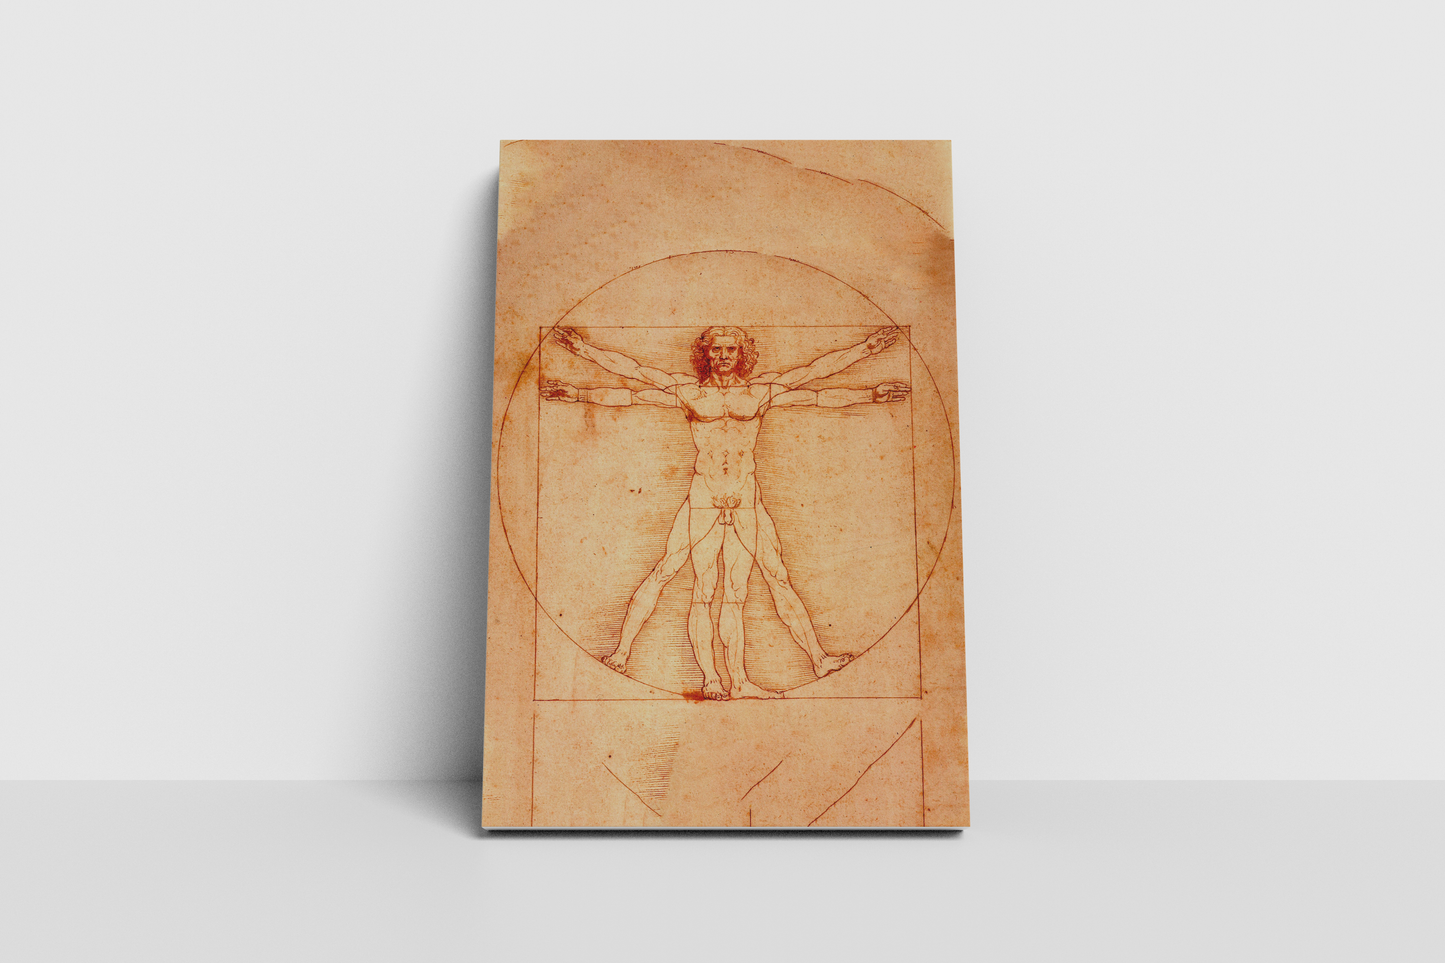 Hombre de Vitruvio - Leonardo da Vinci